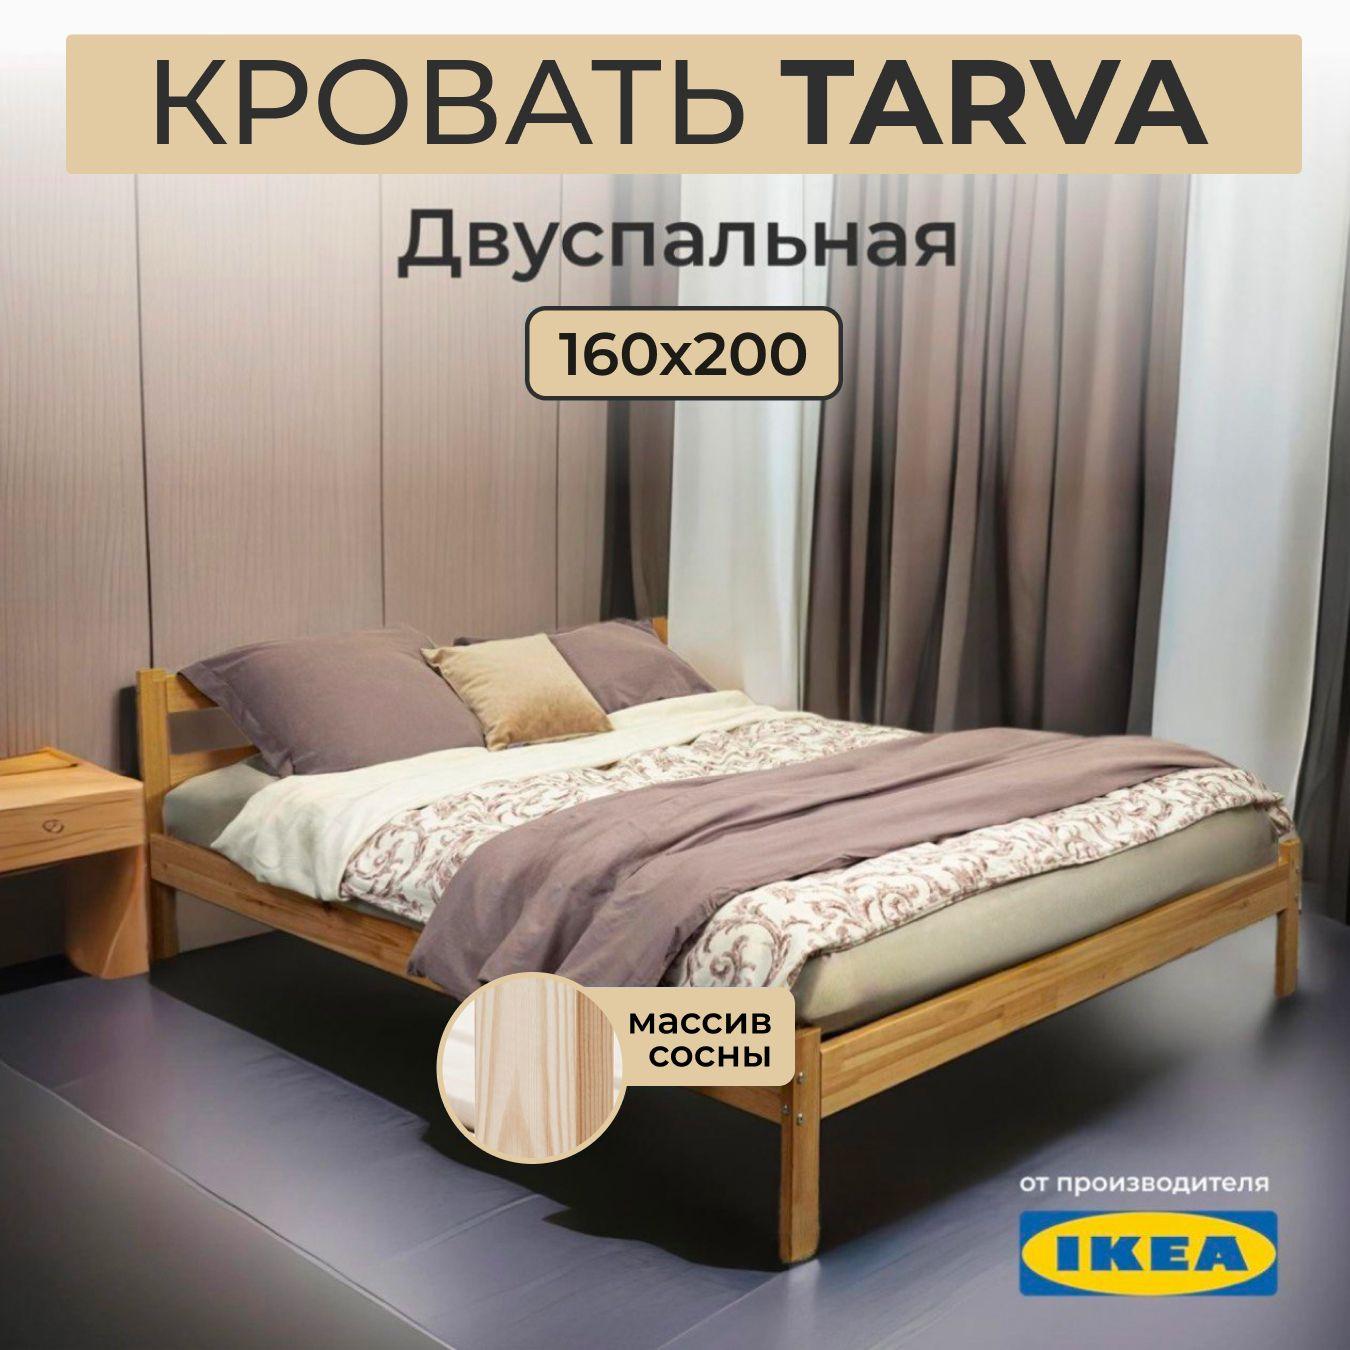 Кровать двуспальная IKEA Tarva 160х200 см массив сосны